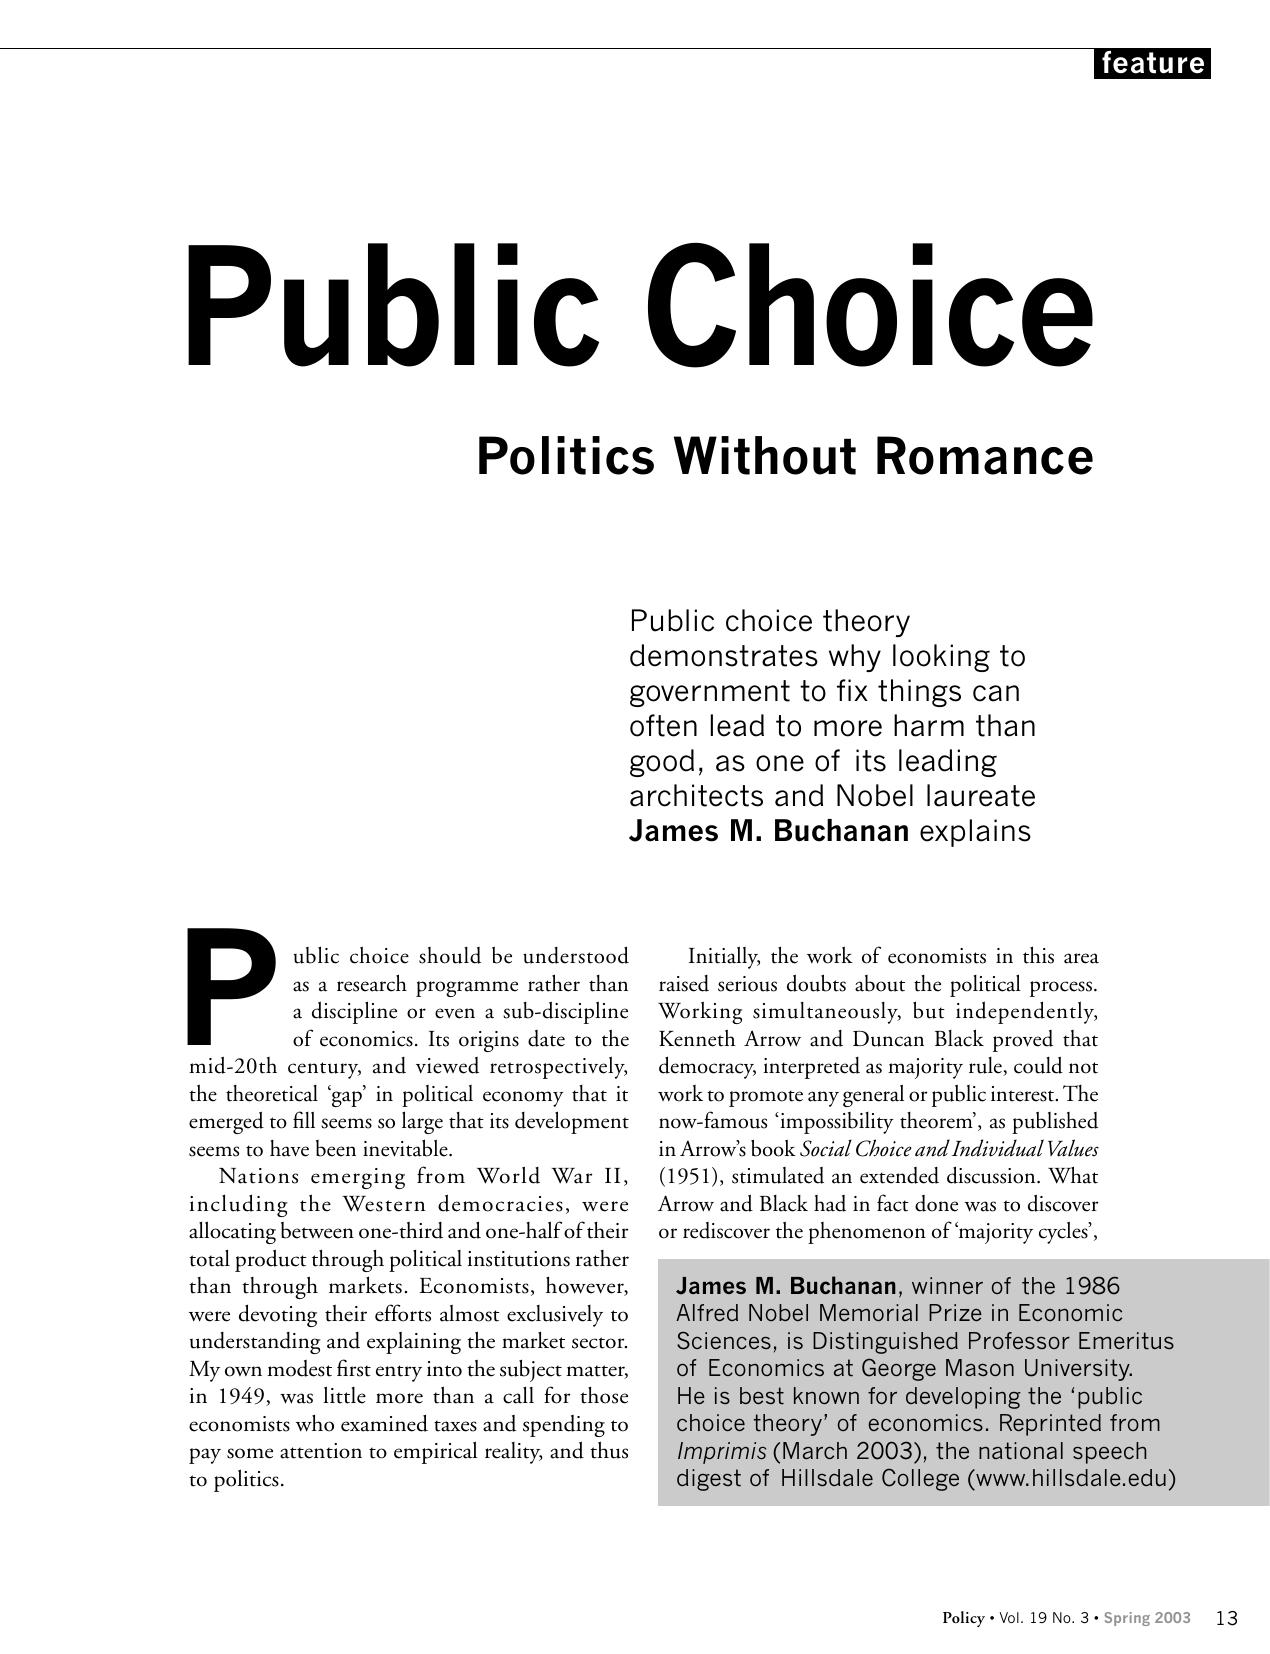 Public Choice - Politics without Romance